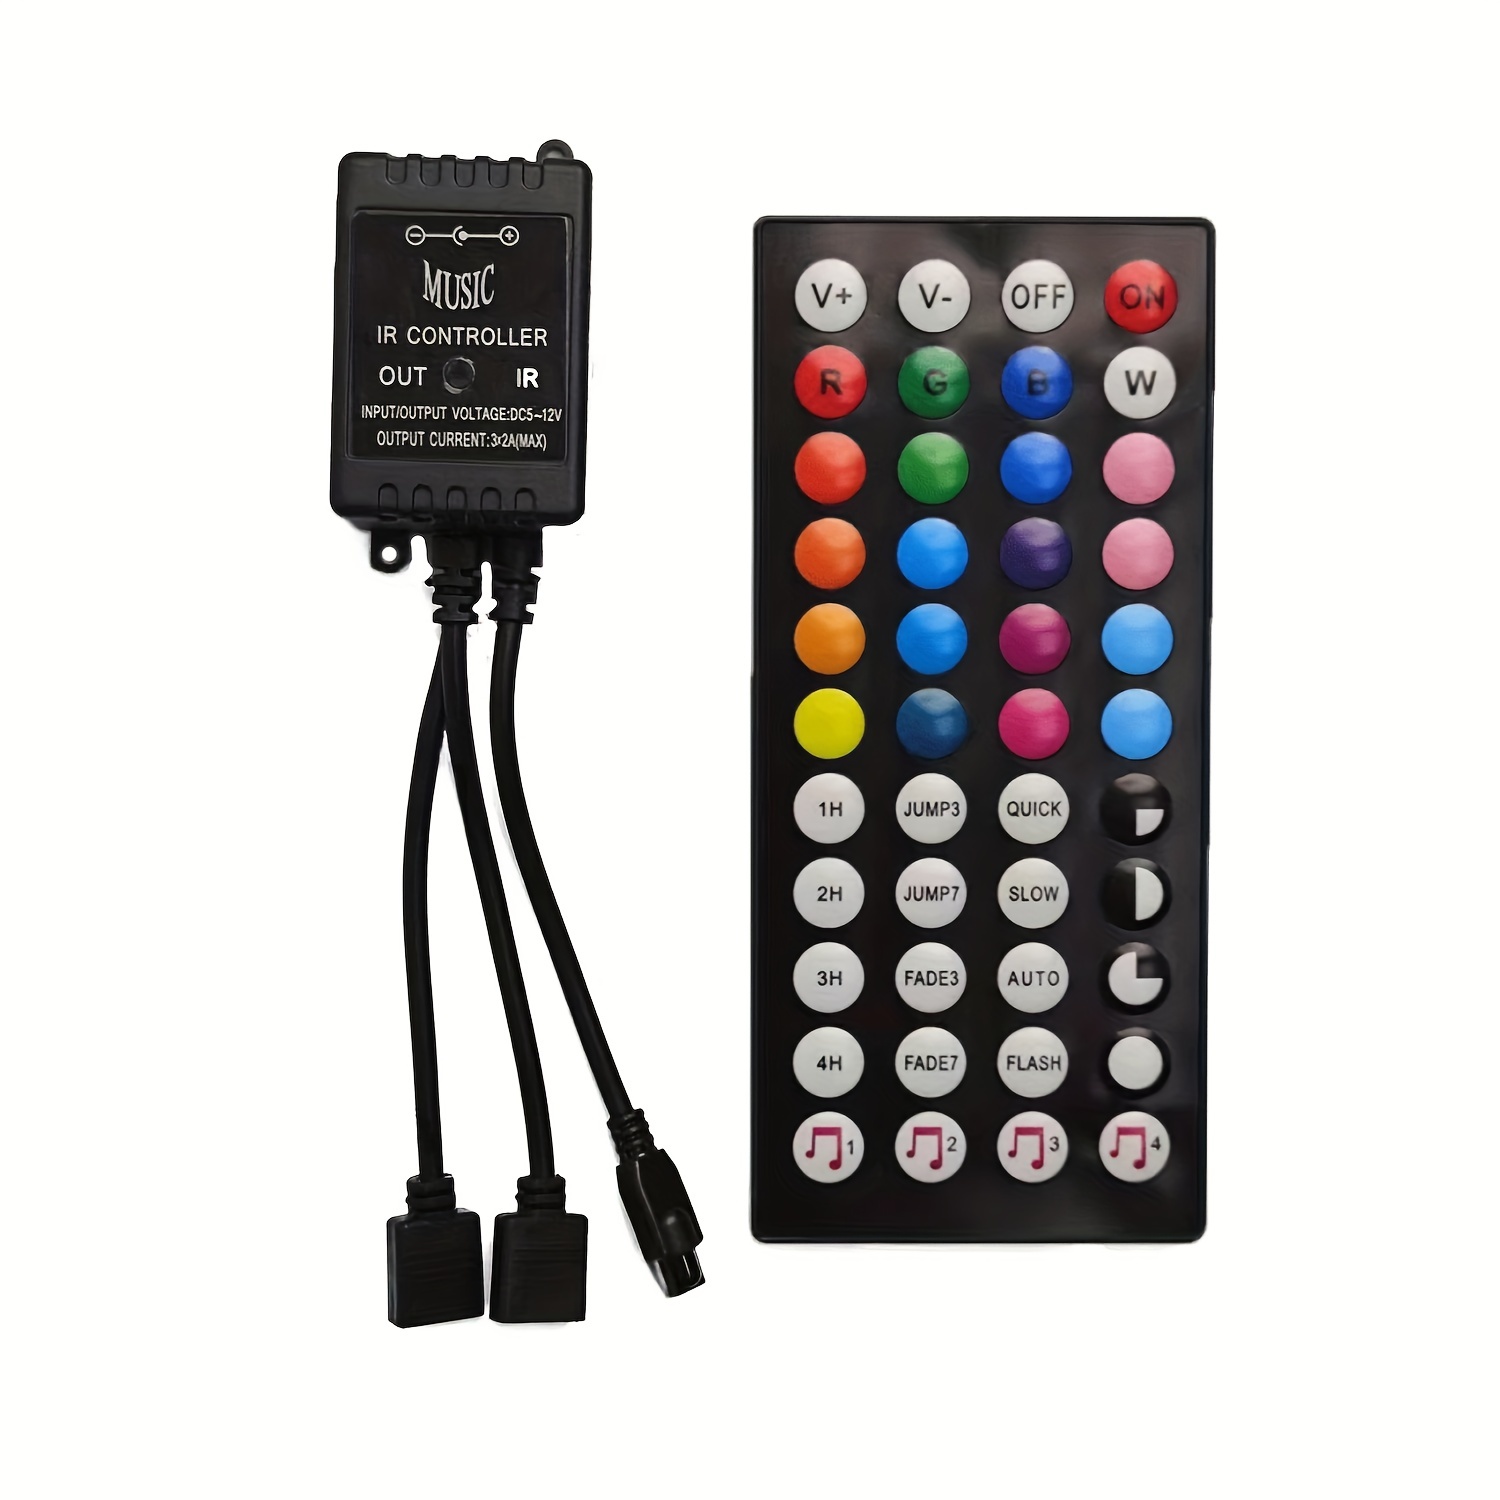 Tira de luces LED, kit de tira de luz RGB que cambia de color de 16.4 pies  con control remoto y caja de control para habitación, dormitorio, TV